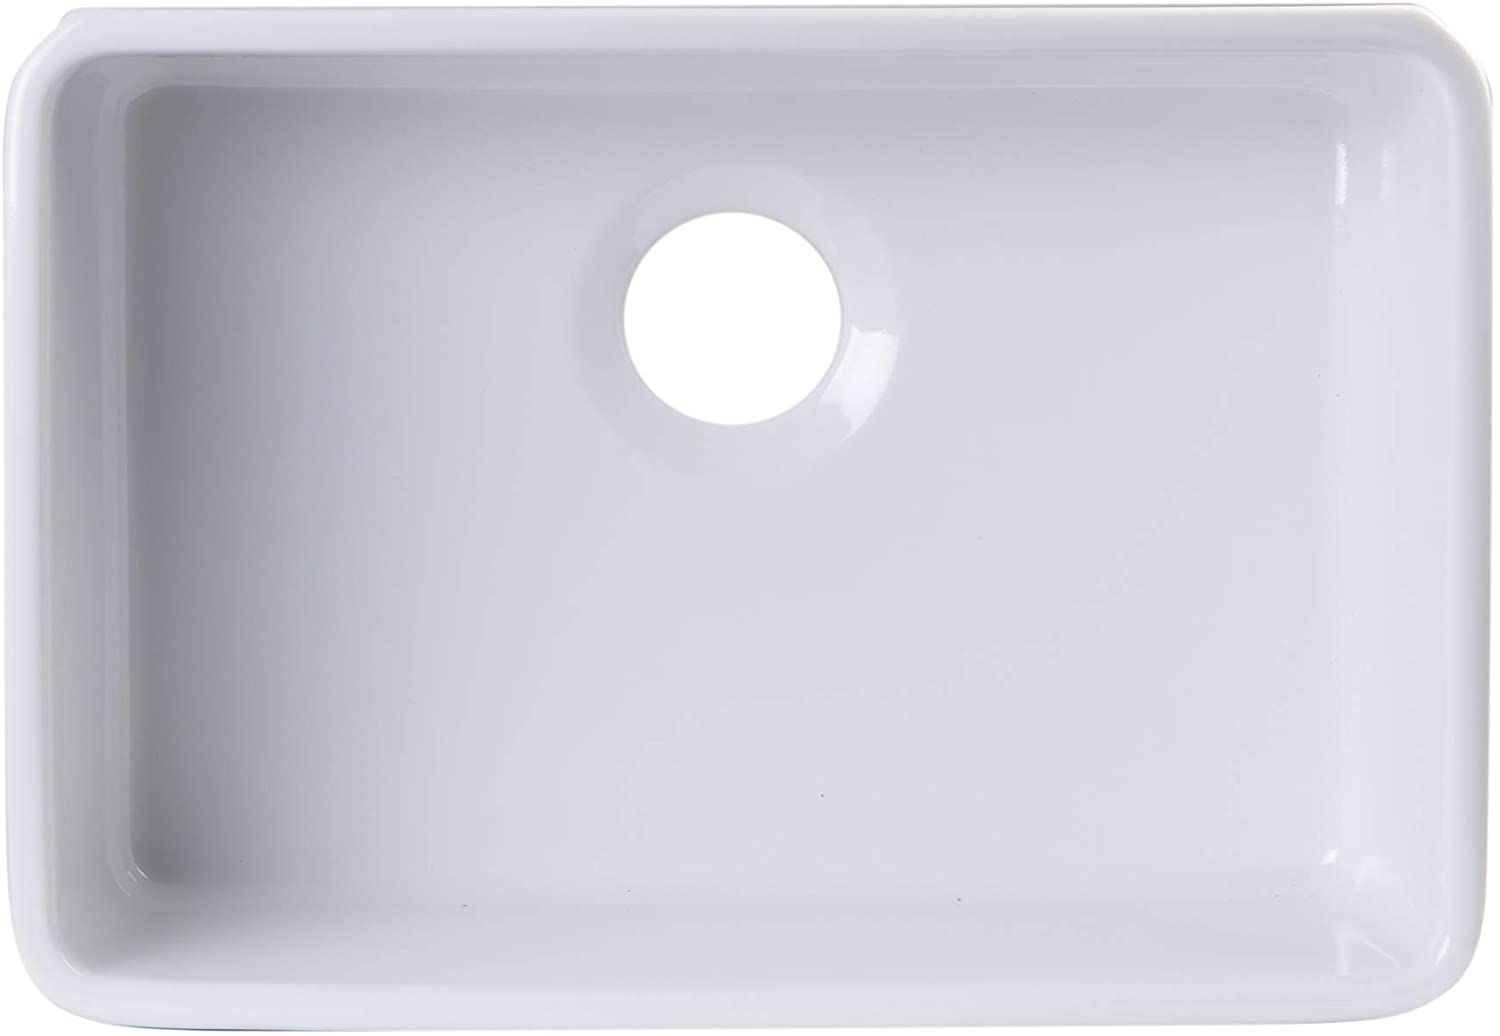 AB503UM-W White Single Bowl Fireclay Undermount Kitchen Sink, 24